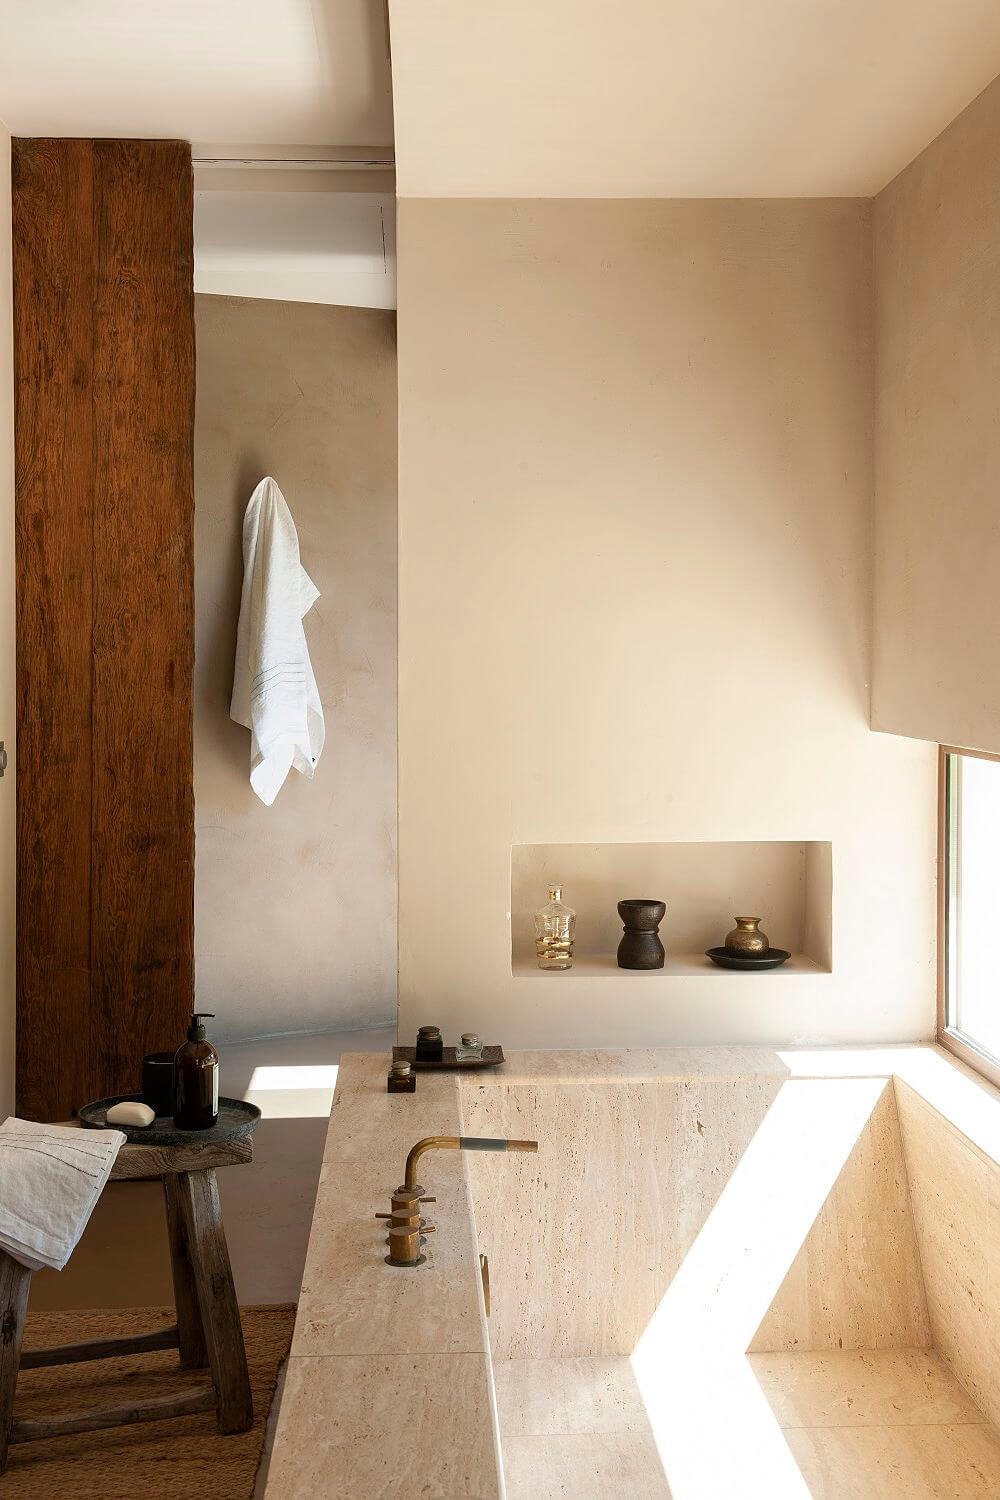 La hornacina del baño, un elemento práctico y decorativo